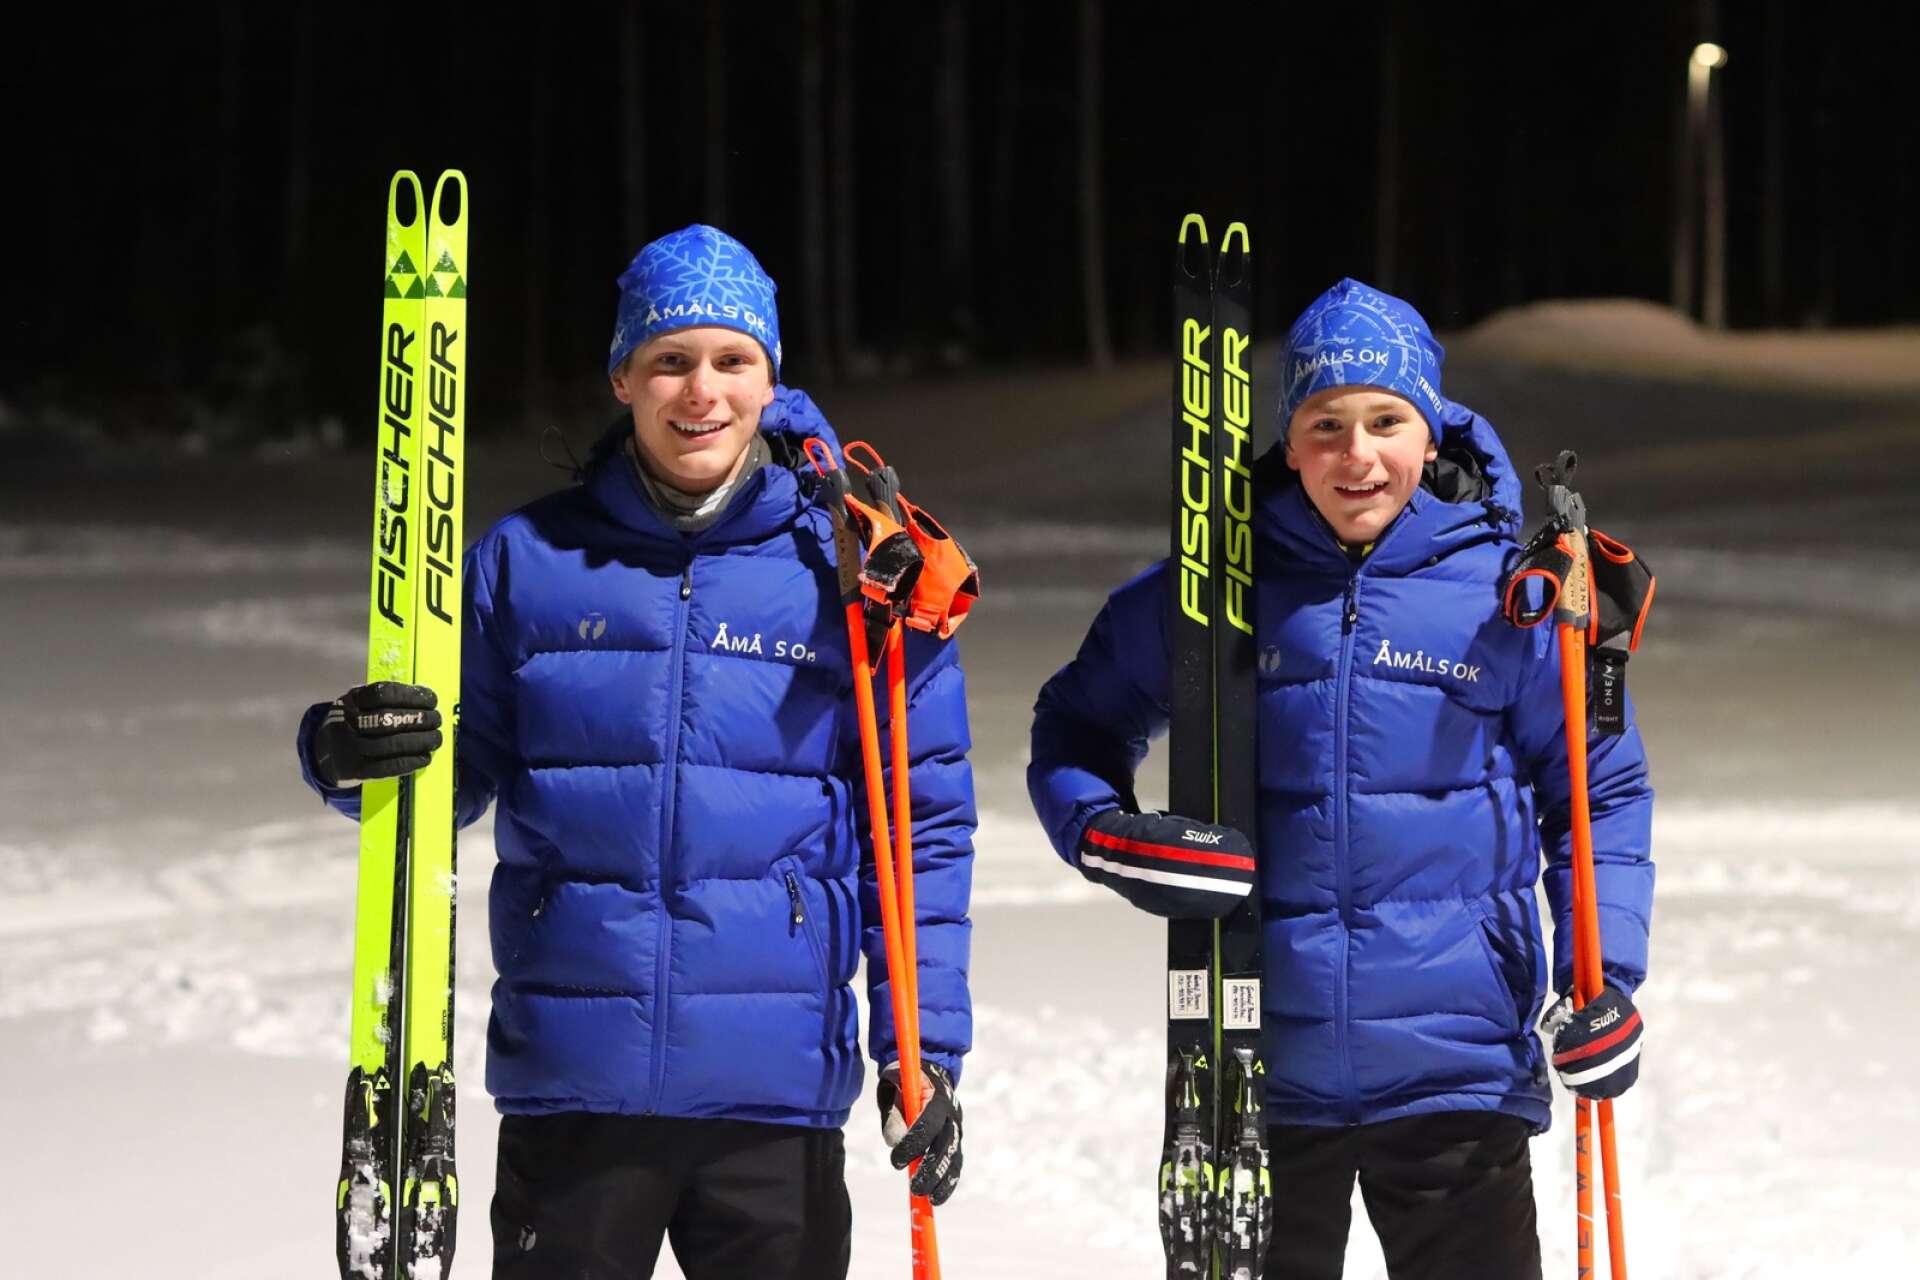 Bröderna Gustaf och Walter Persson körde stafetten tillsammans med Oscar Ahlstedt. 